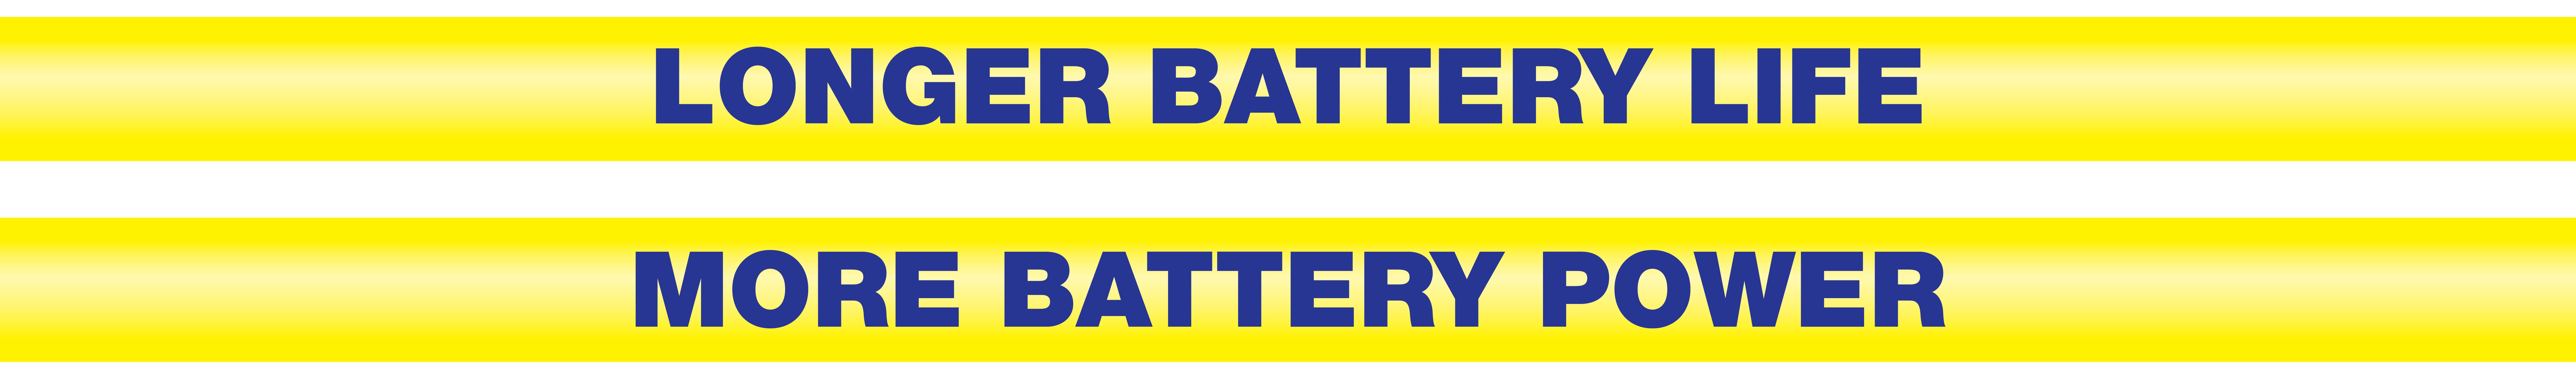 Longer battery life, more battery power